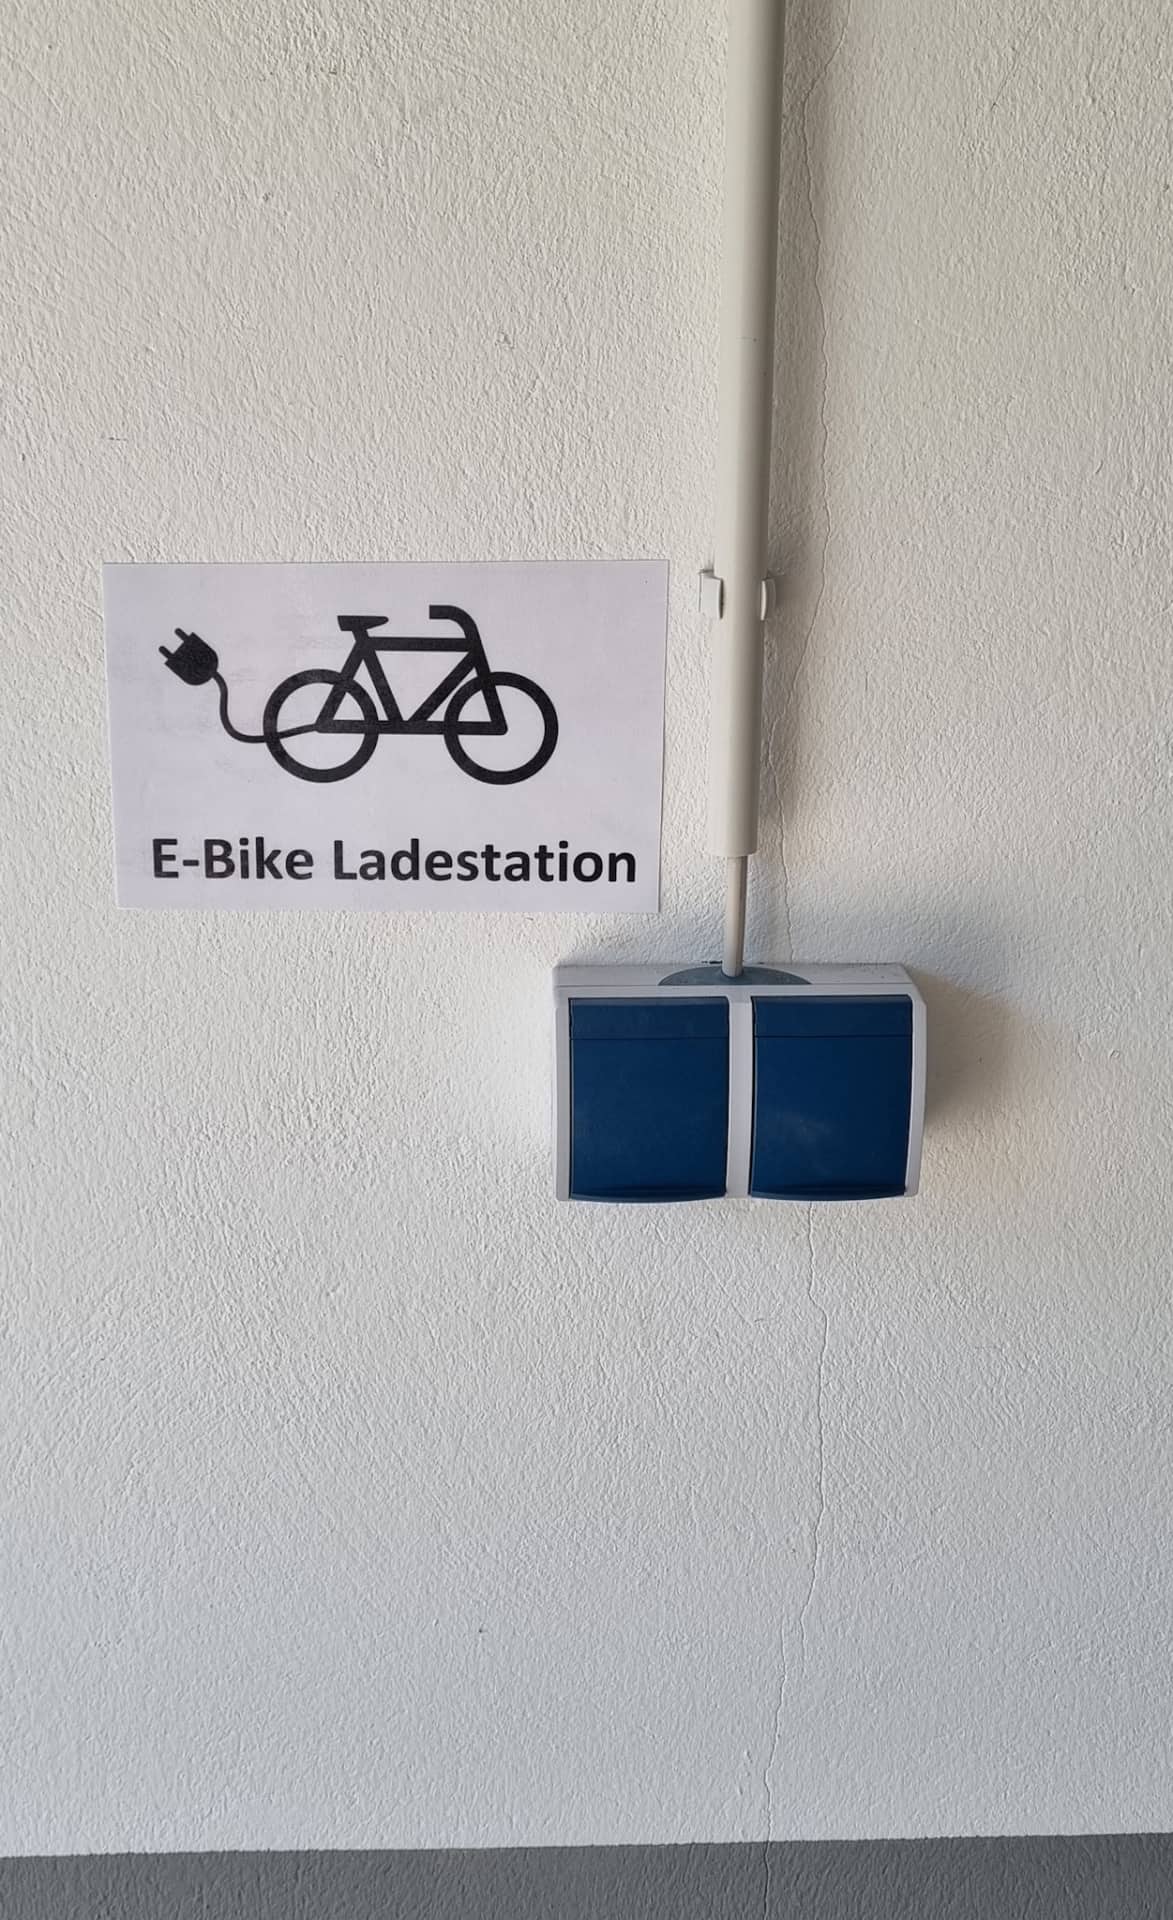 E-Bike-Ladestation - für Gäste kostenfrei nutzbar